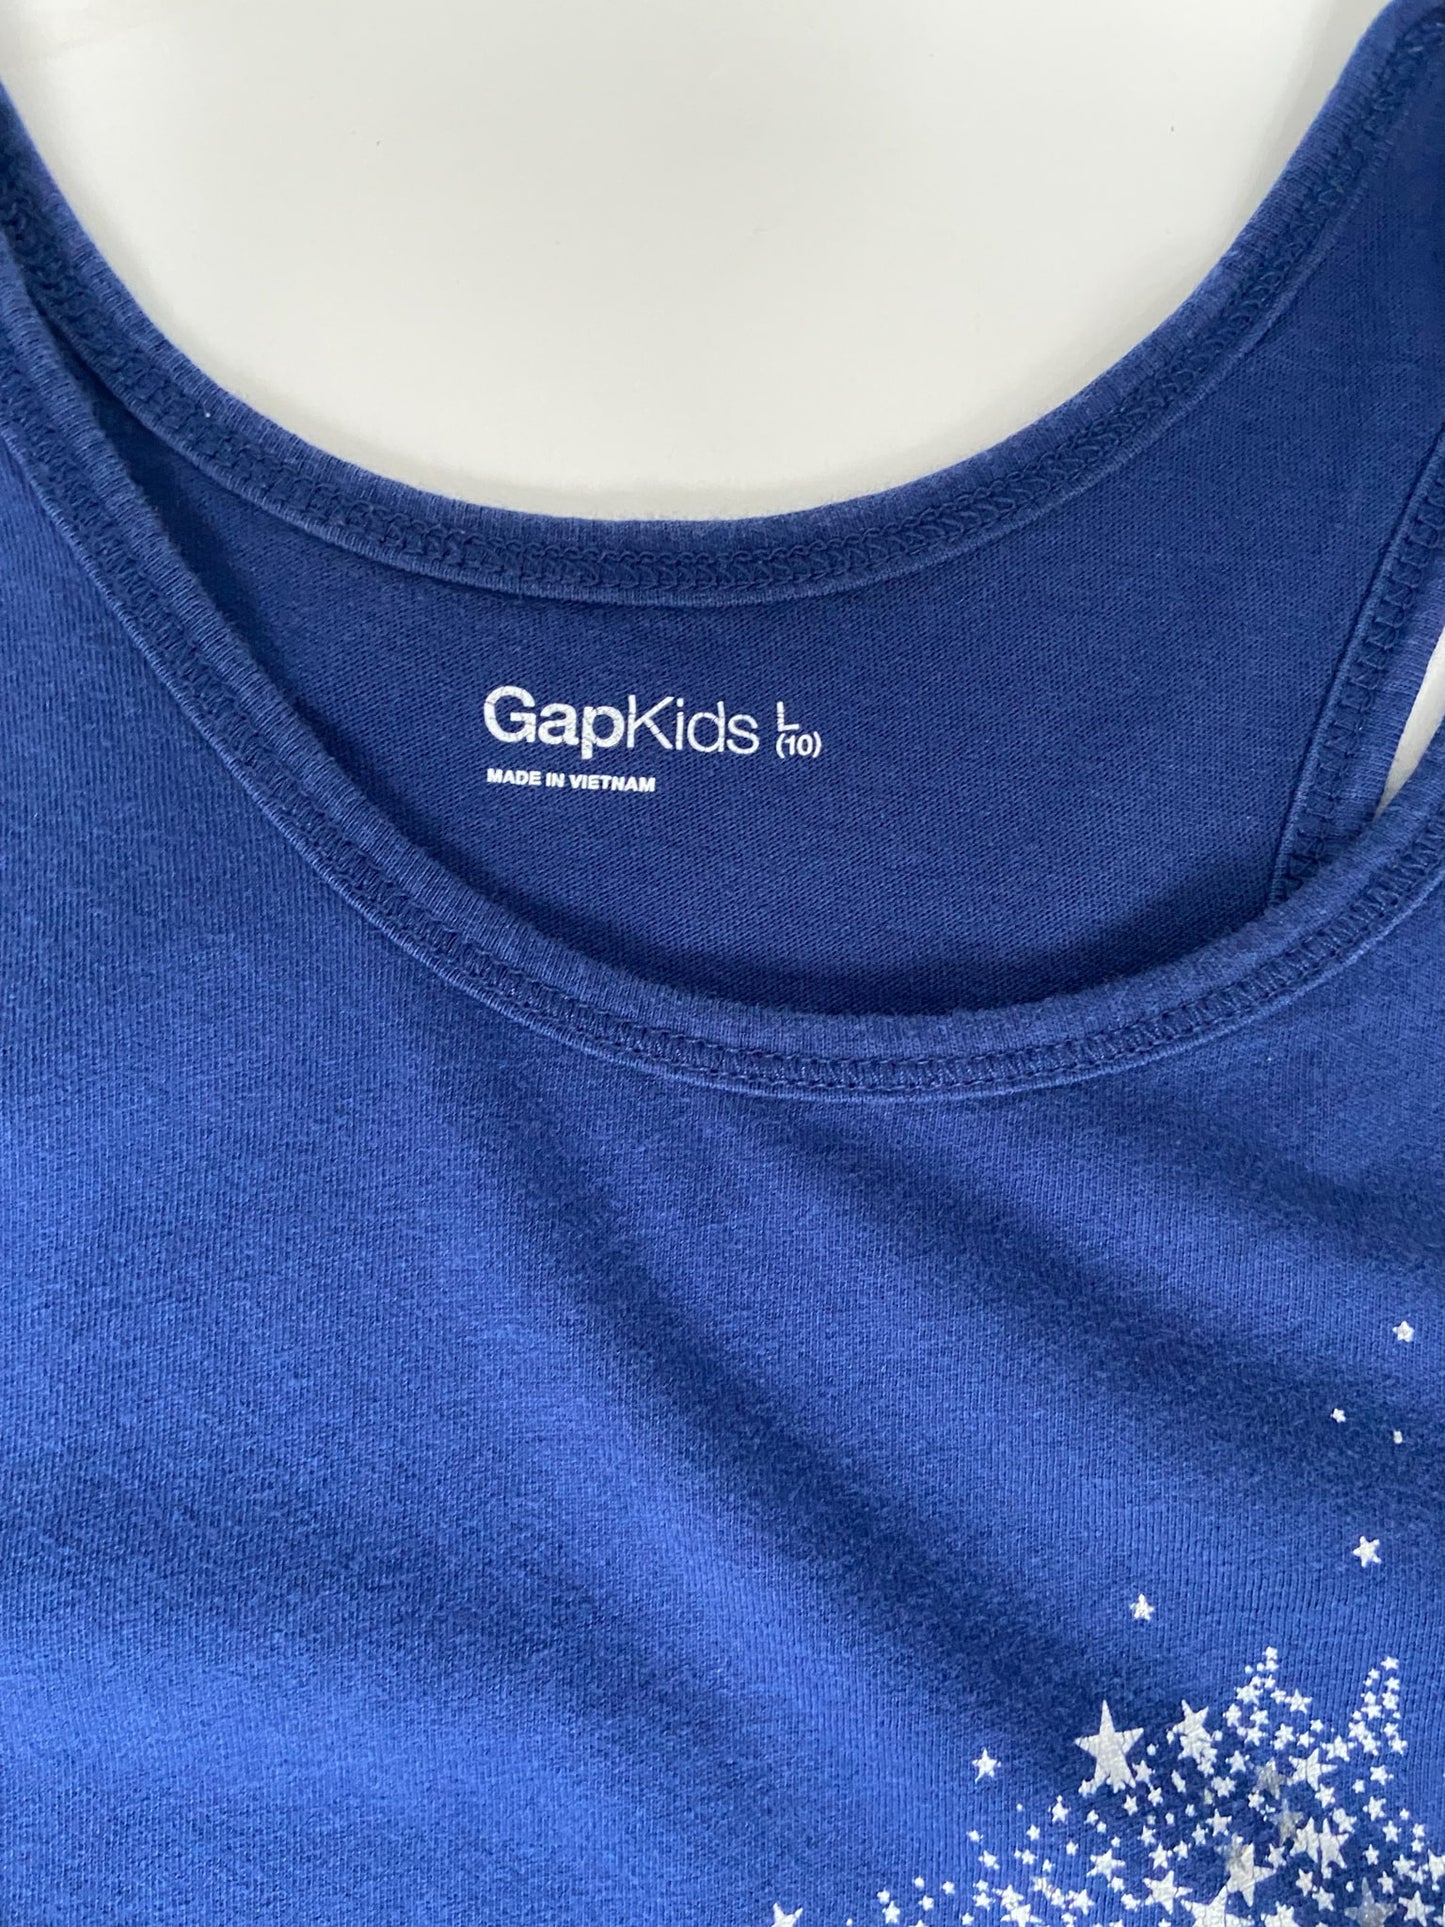 Gap Kids Tank Top - Blue - Youth Large